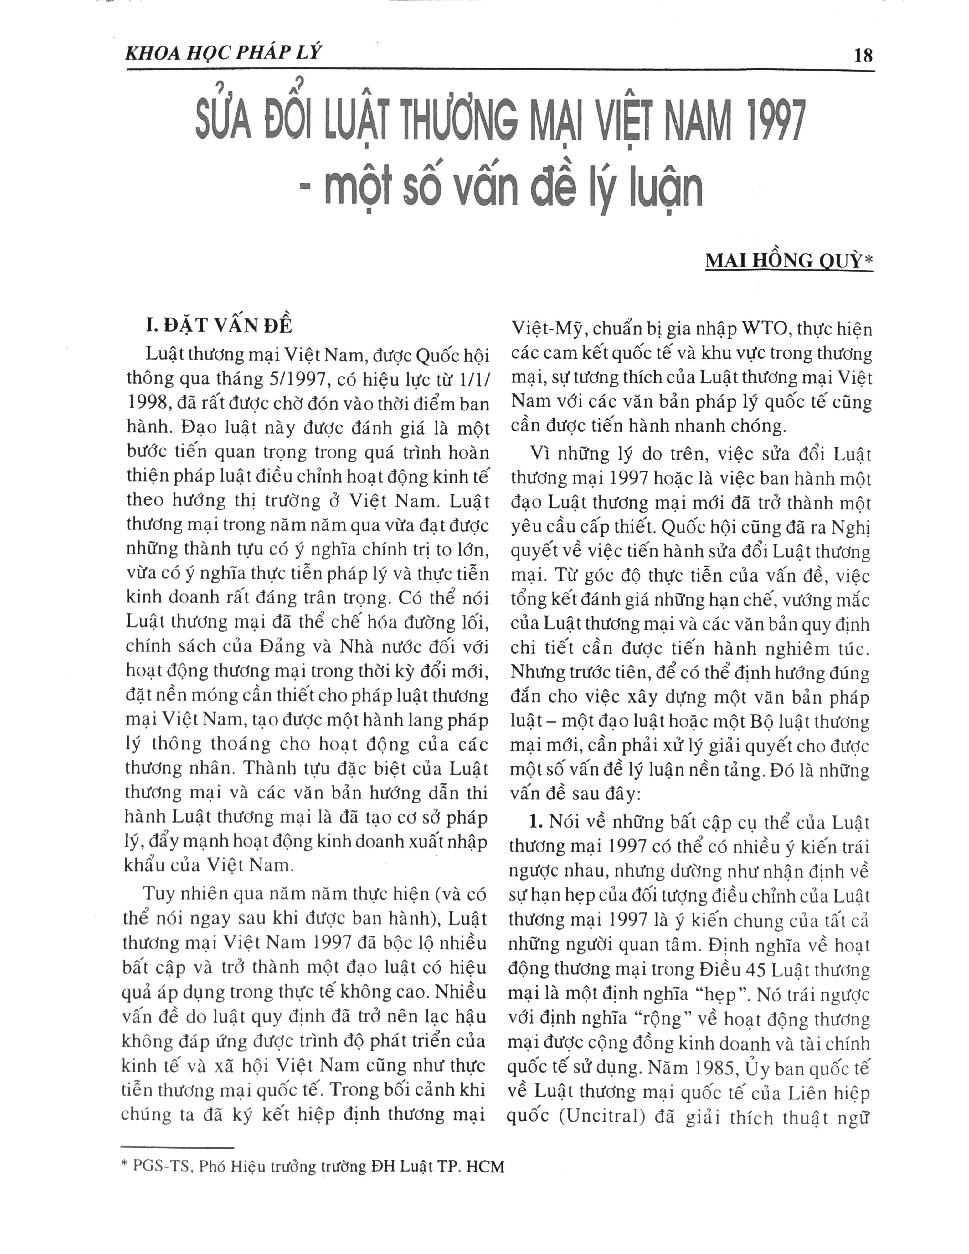 Sửa đổi Luật Thương mại Việt Nam 1997 - một số vấn đề lý luận